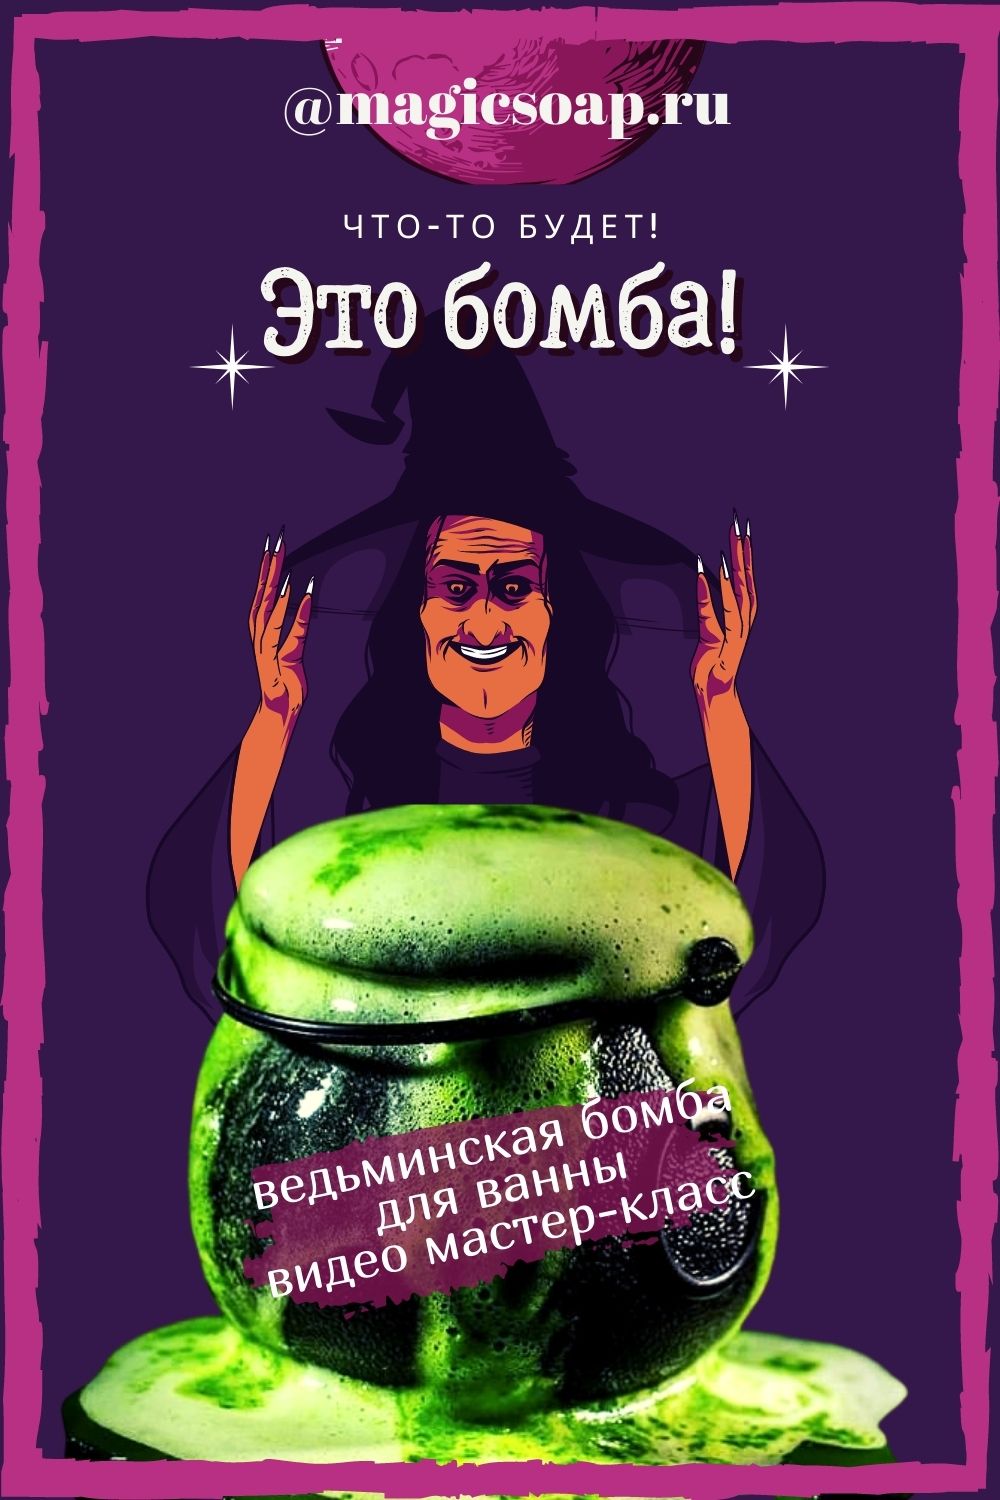 Соль для ванн – рецепты в домашних условиях - Красота и здоровье - webmaster-korolev.ru